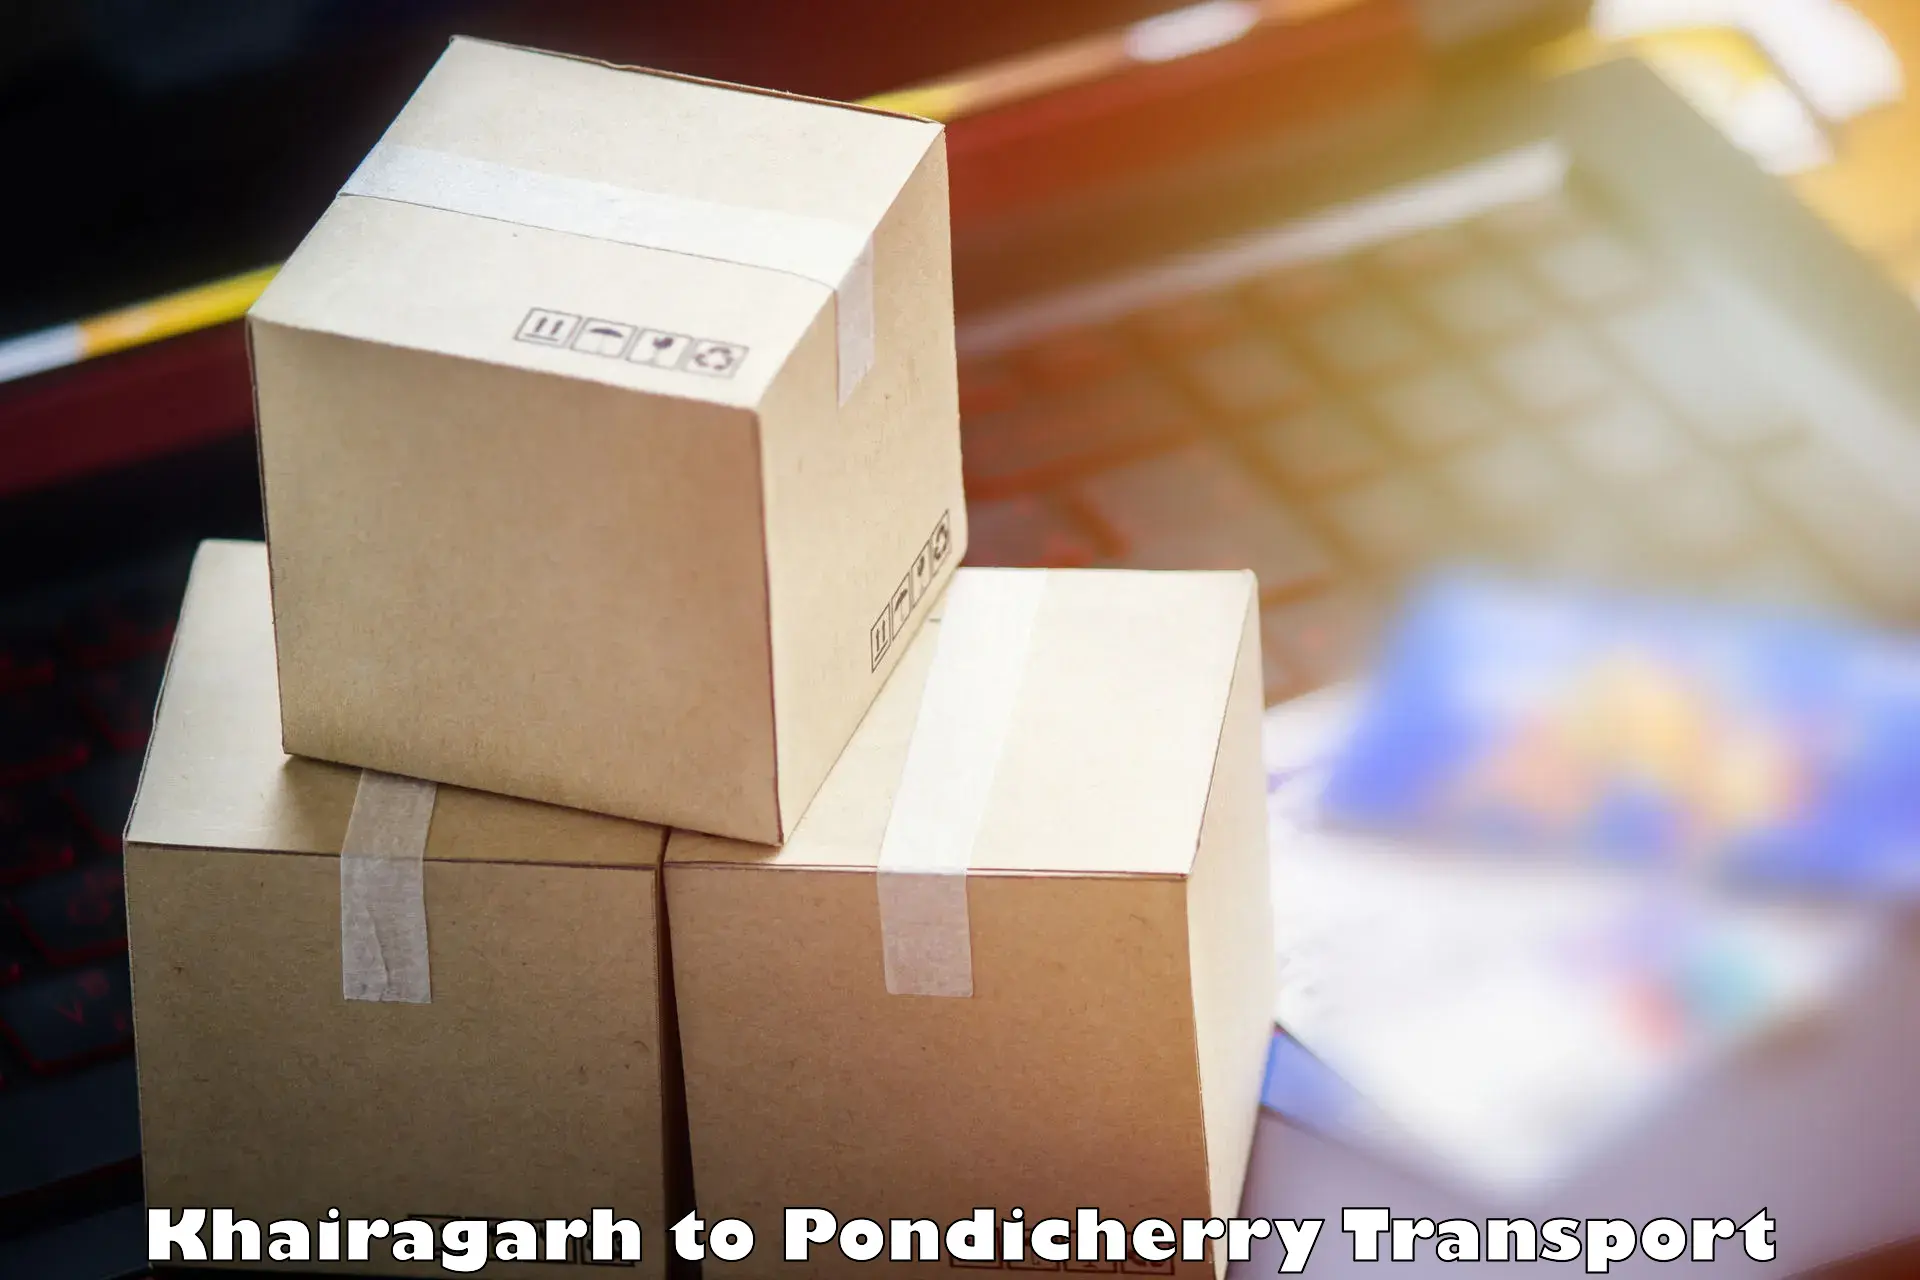 Road transport online services Khairagarh to Pondicherry